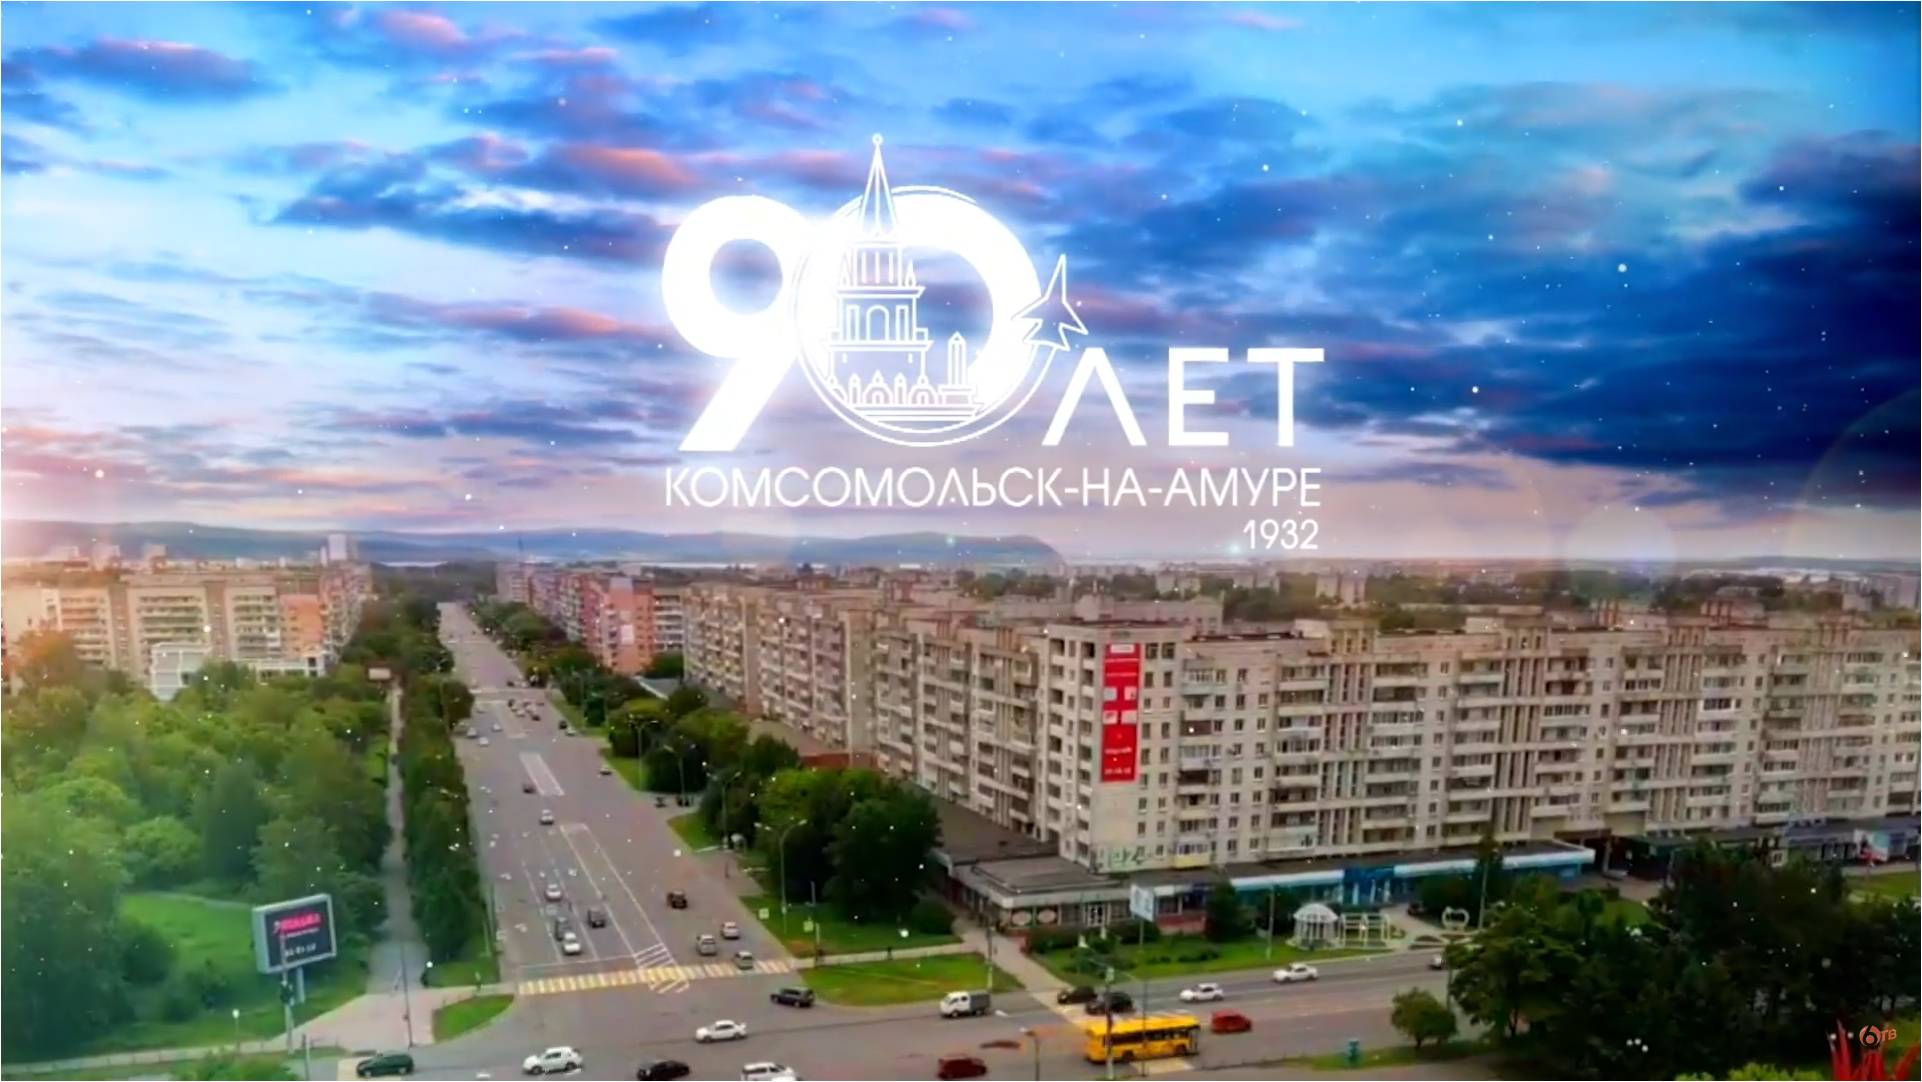 90 лет Комсомольску-на-Амуре. Фильм к юбилею города Юности